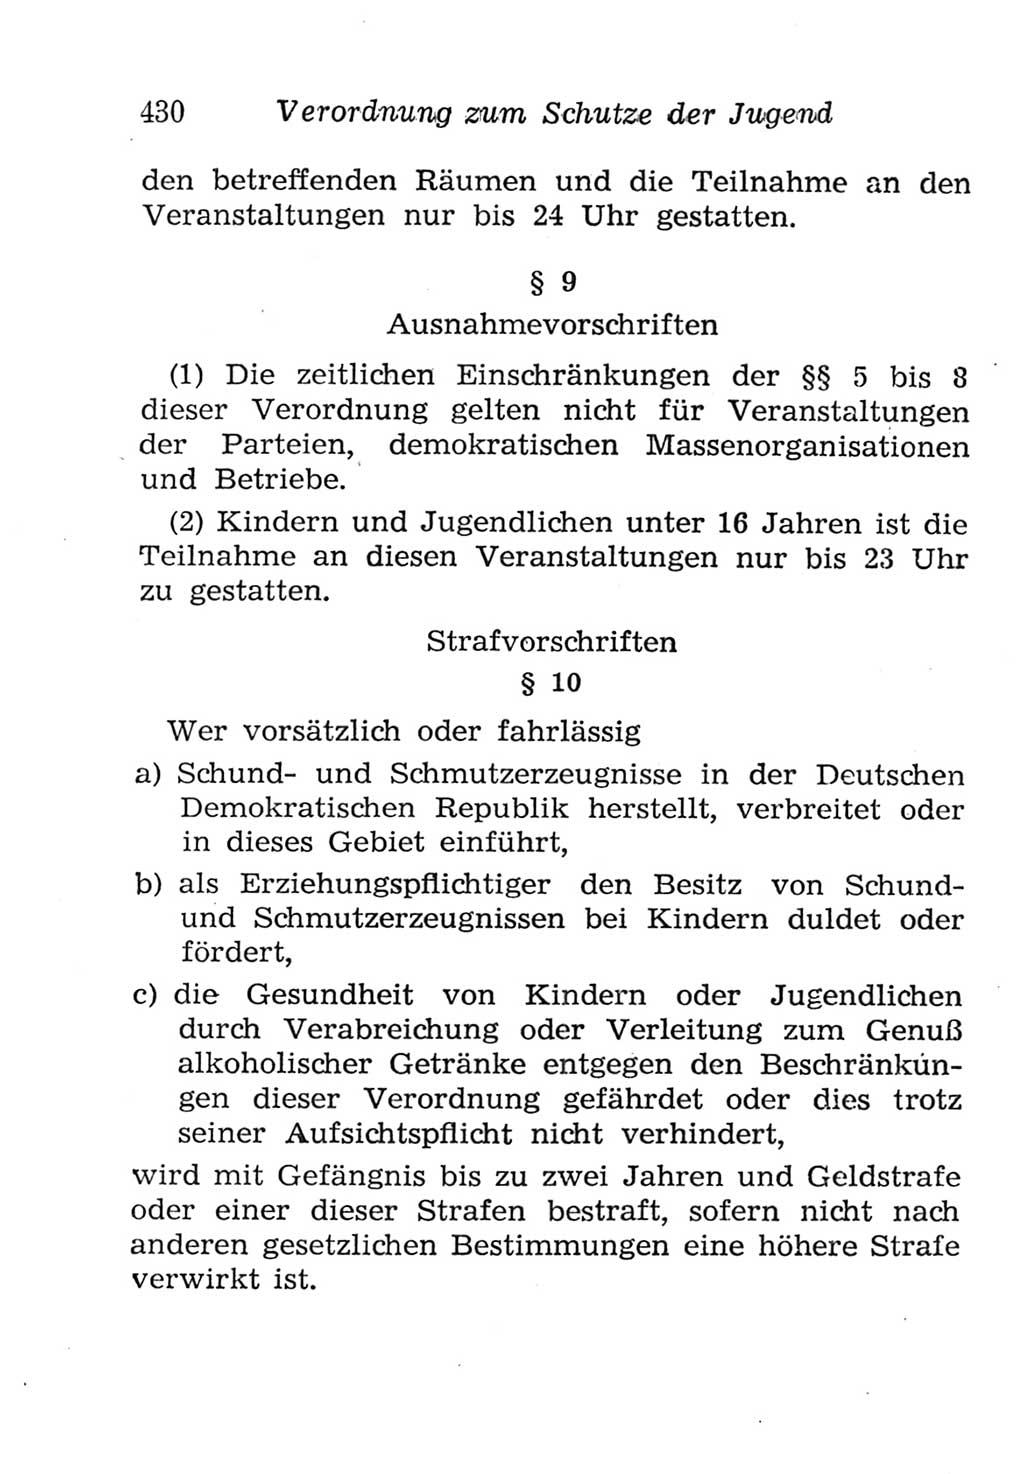 Strafgesetzbuch (StGB) und andere Strafgesetze [Deutsche Demokratische Republik (DDR)] 1957, Seite 430 (StGB Strafges. DDR 1957, S. 430)